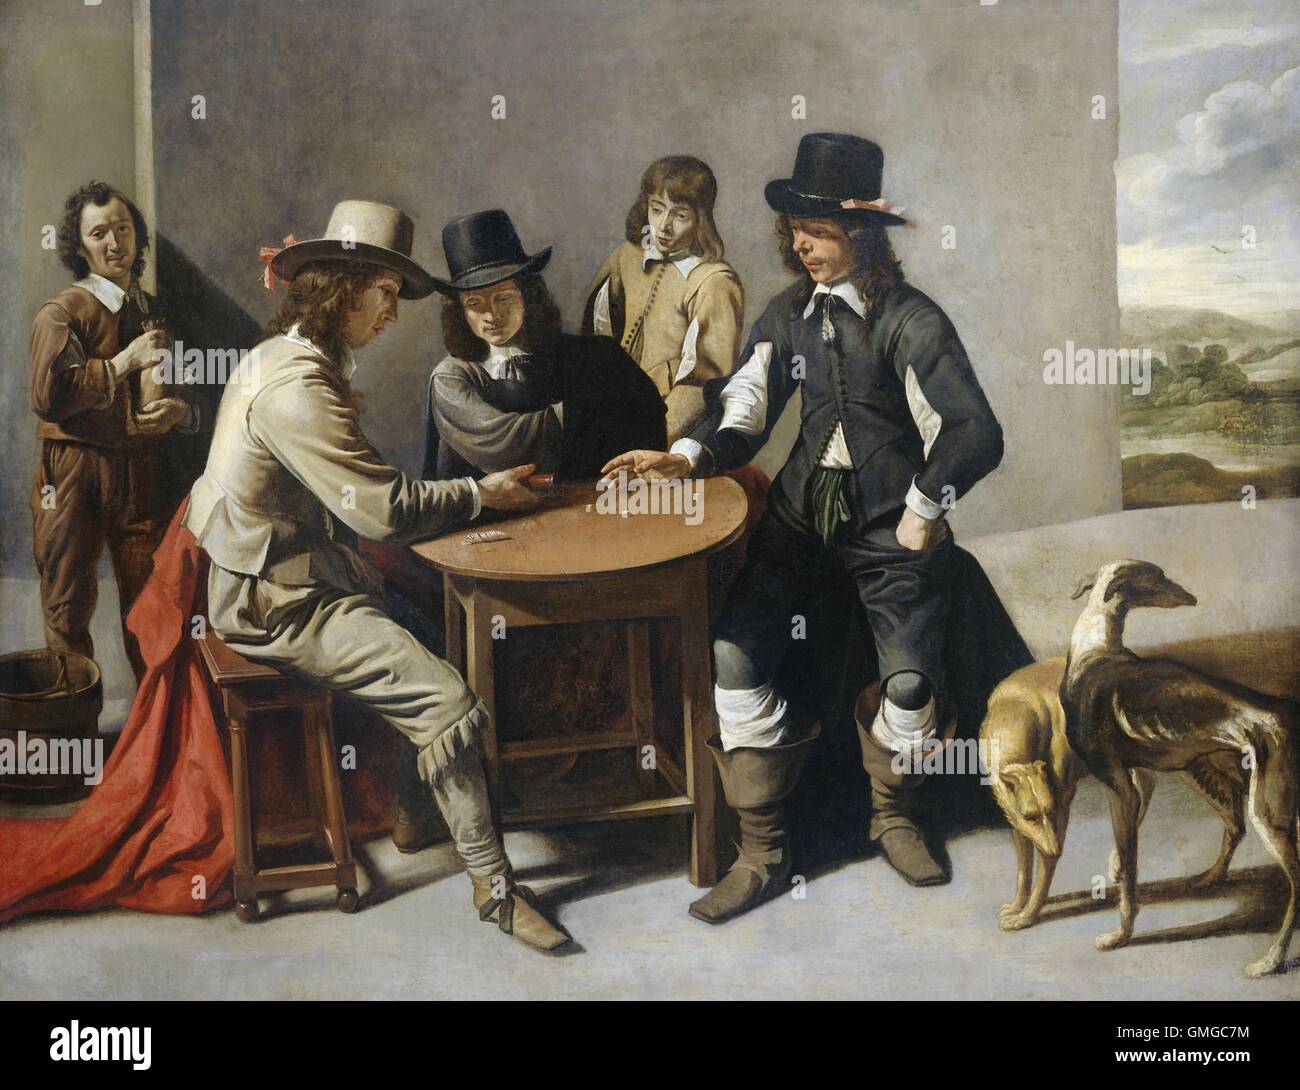 Les joueurs de dés (les joueurs), par disciple de Mathieu Le Nain, la peinture française, 1630-80, huile sur toile. Également appelé 'Les Joueurs'. Trois hommes autour d'une table jouent aux dés que deux autres watch (BSLOC 2016 3 175) Banque D'Images